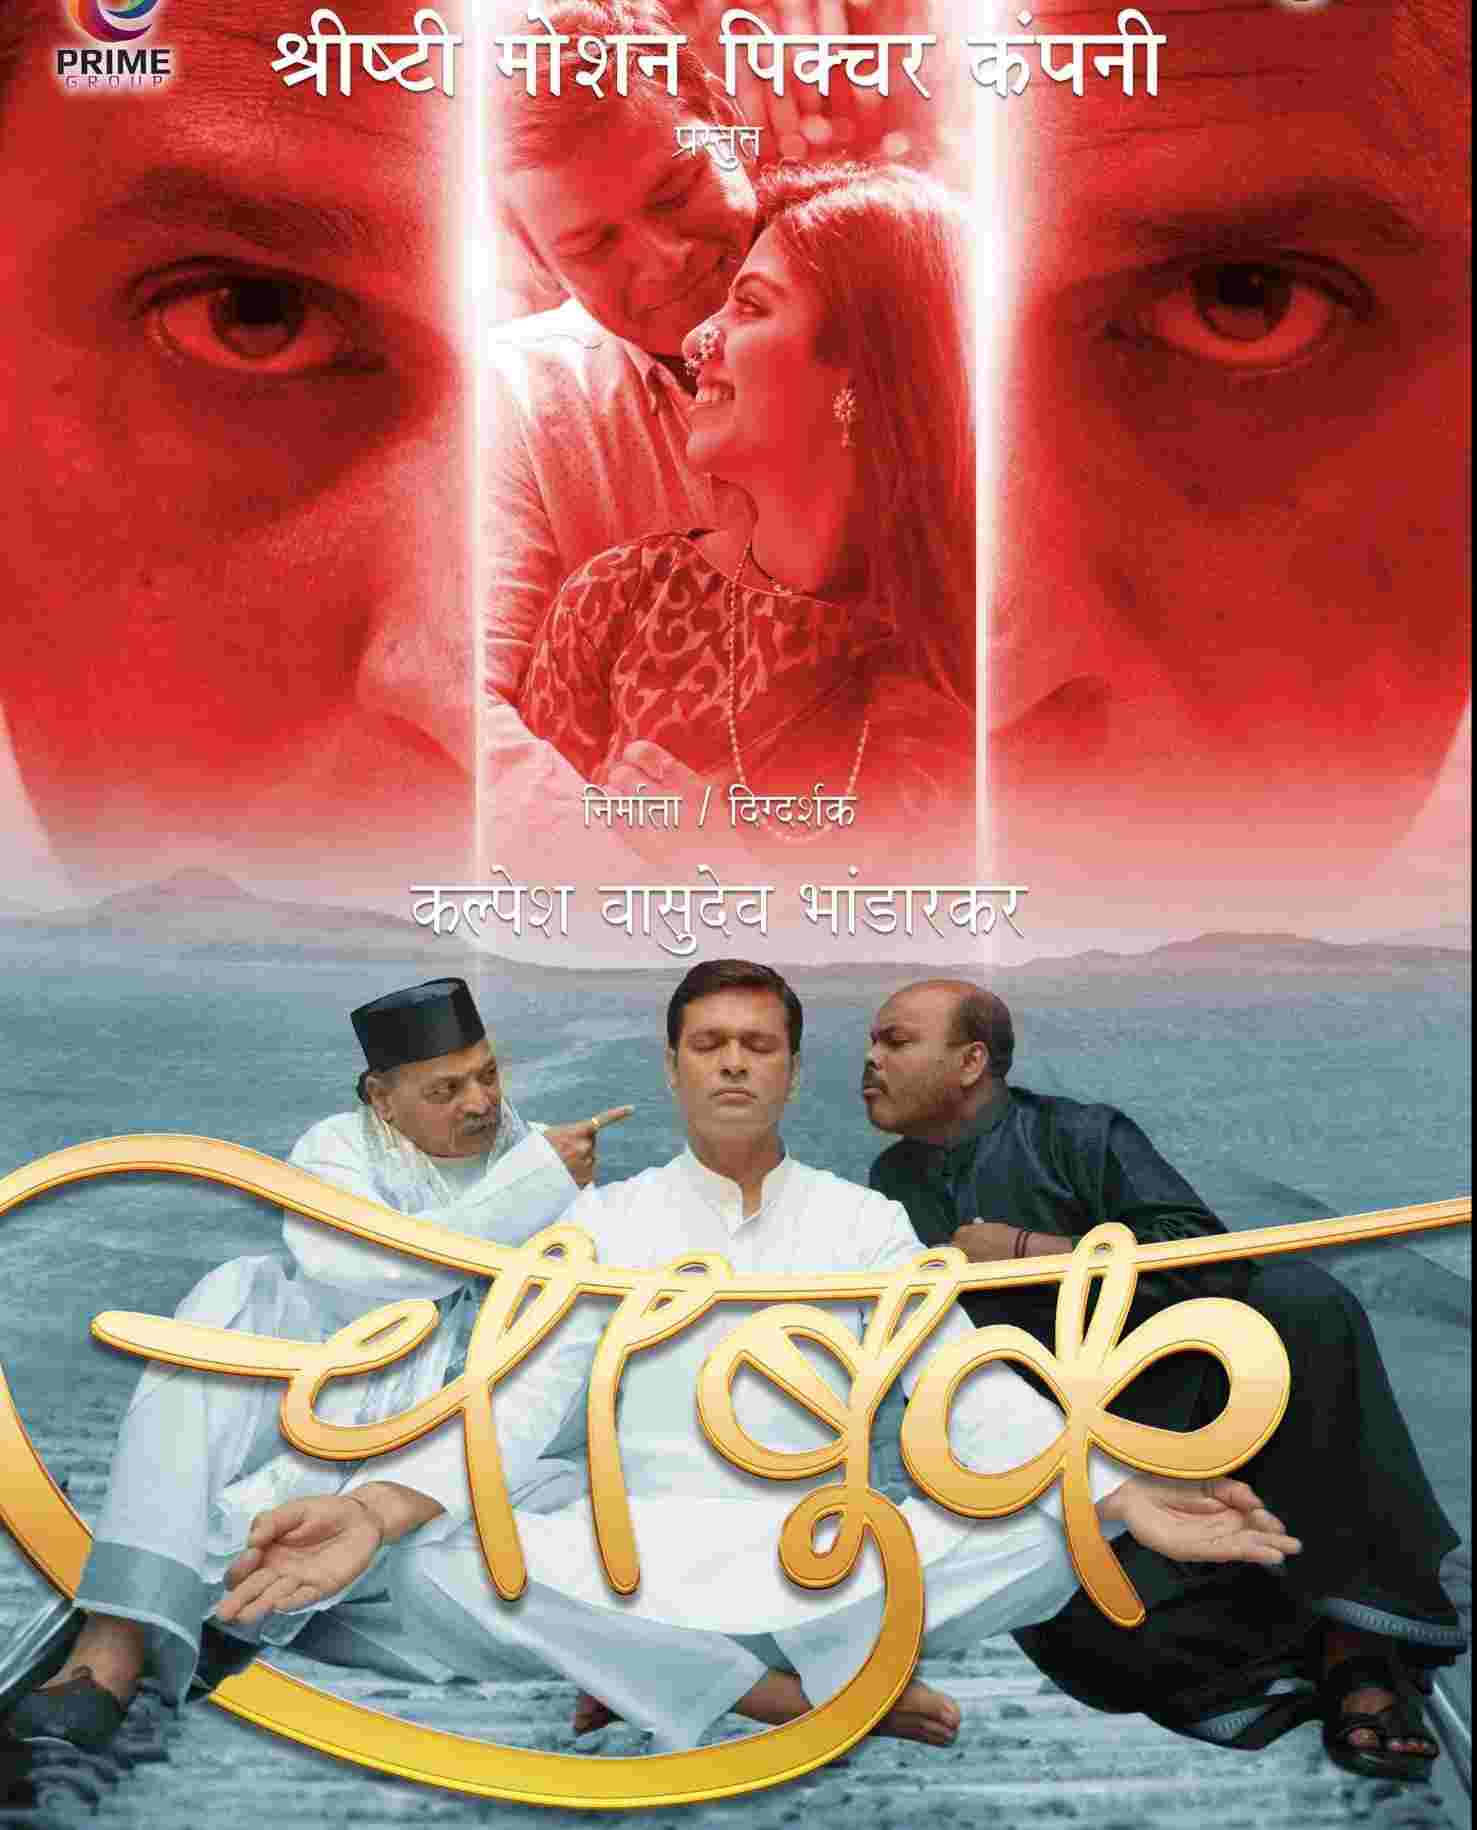 Marathi Film 'Chabuk' will hit theaters on February 25